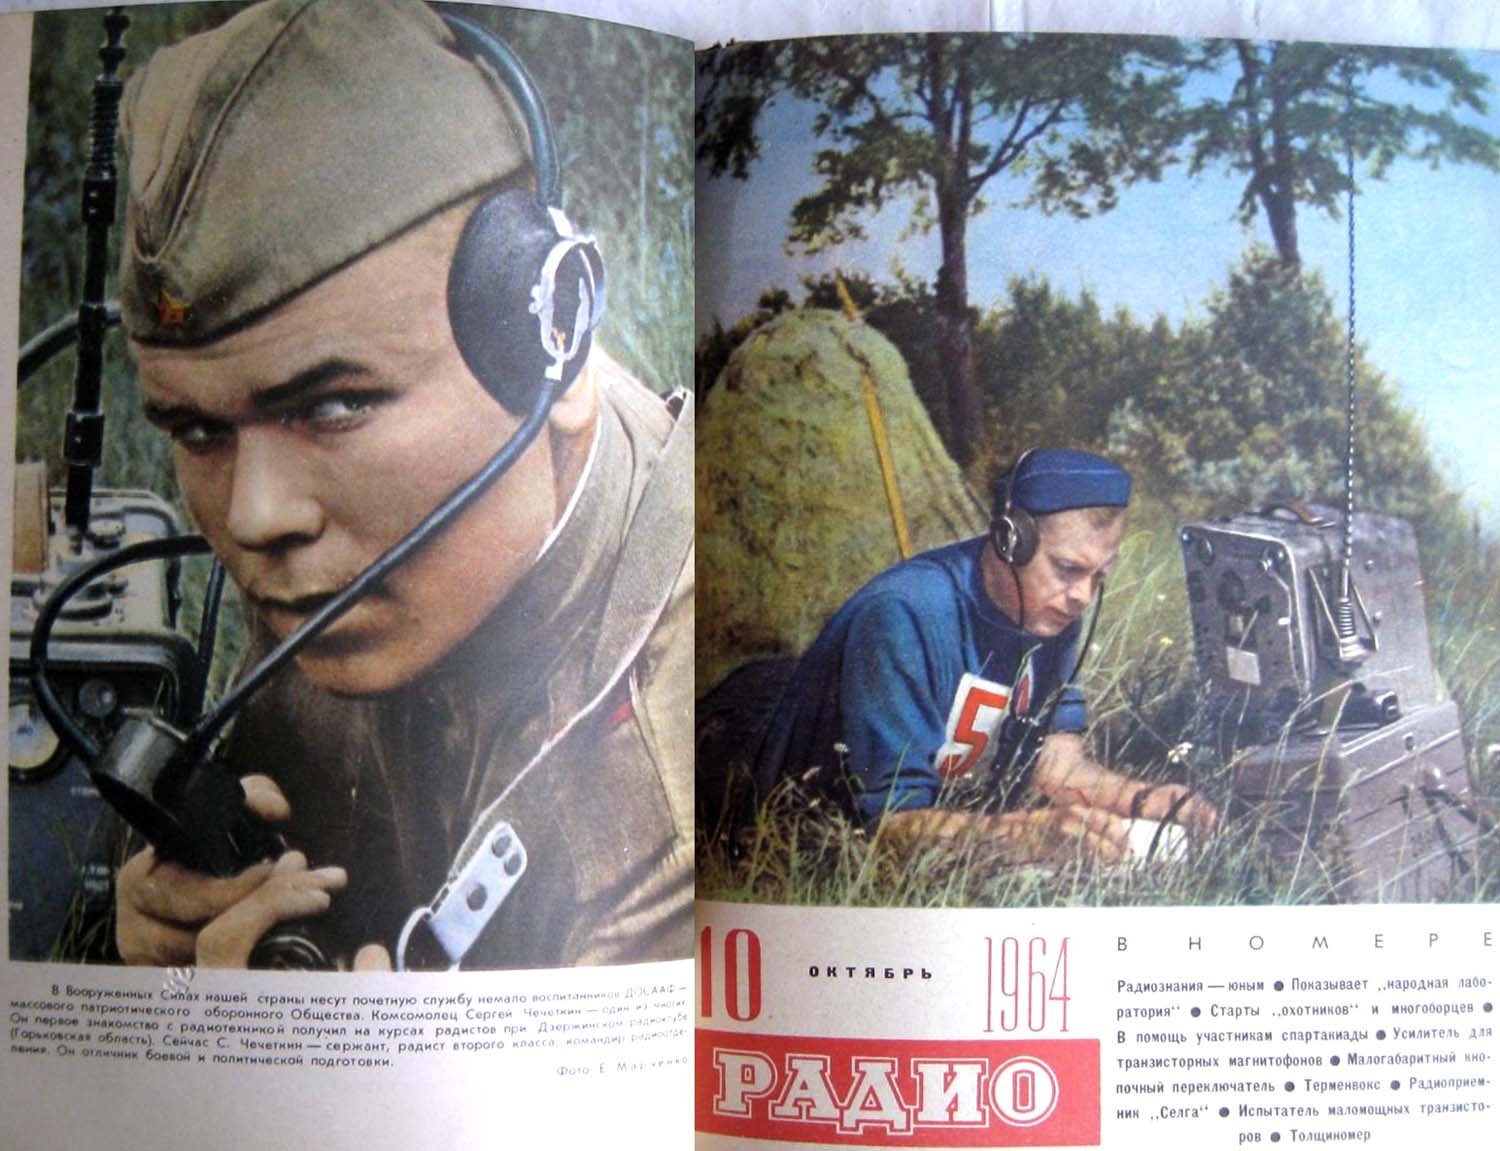 Журнал Радио 1964 карболитовые наушники с резиновыми амбушюрами армейские военные связисты с рациями приёмниками и передатчиками